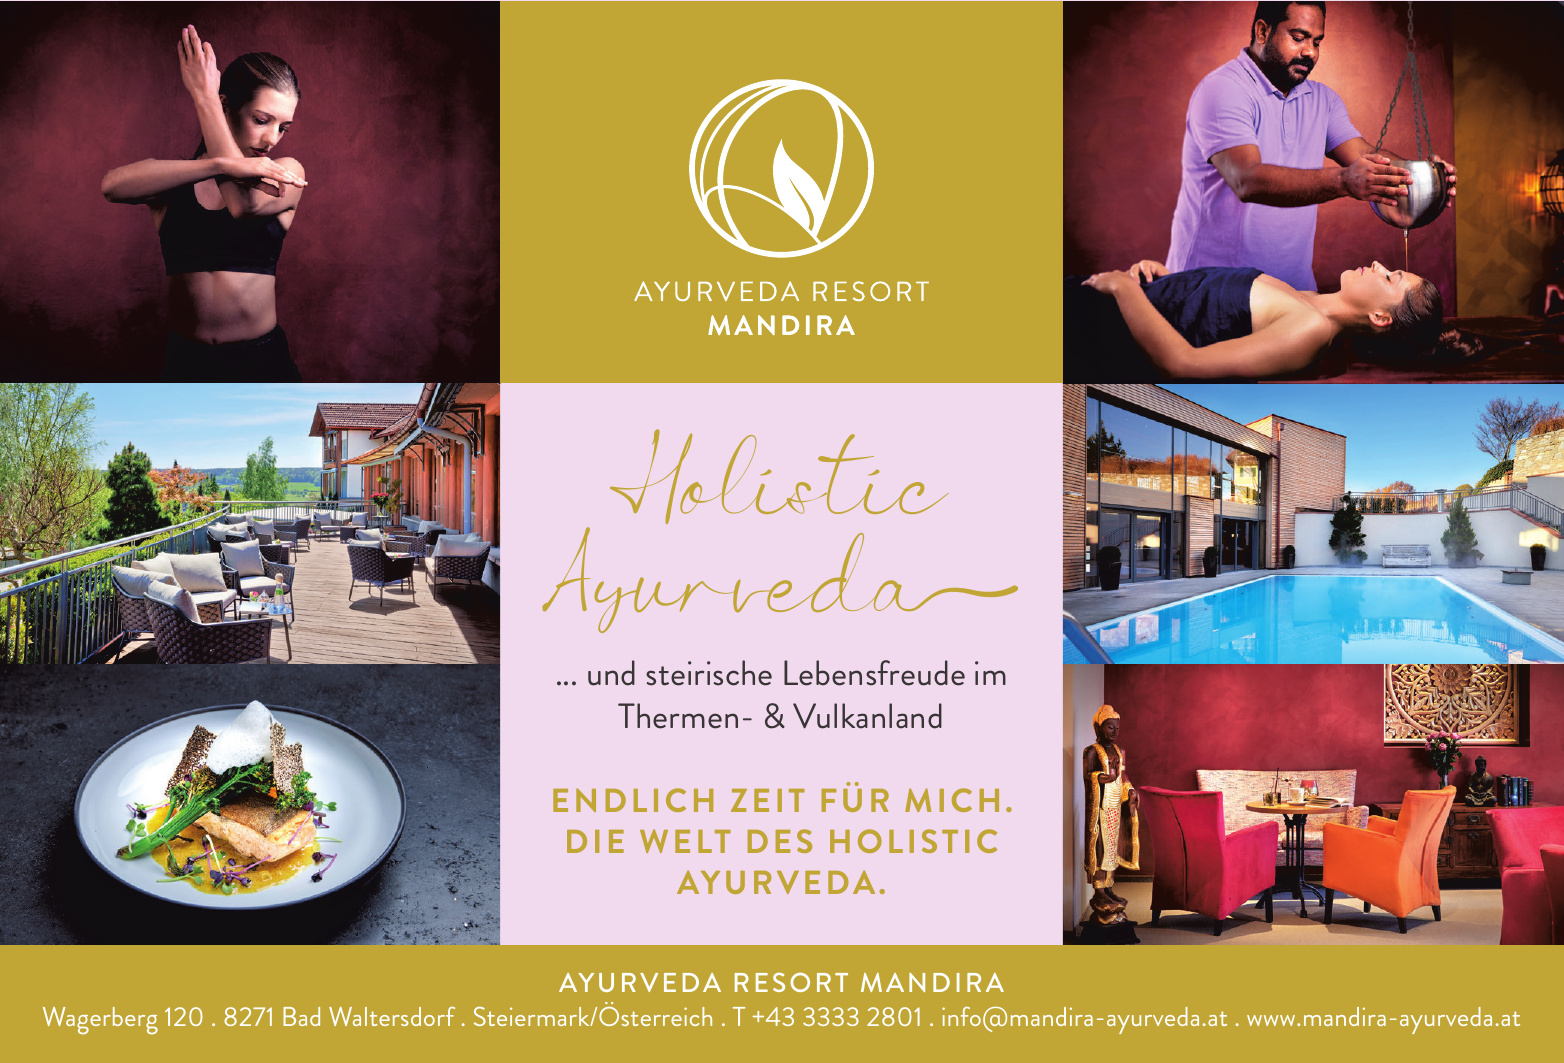 Ayurveda-Resort Mandira GmbH & Co KG